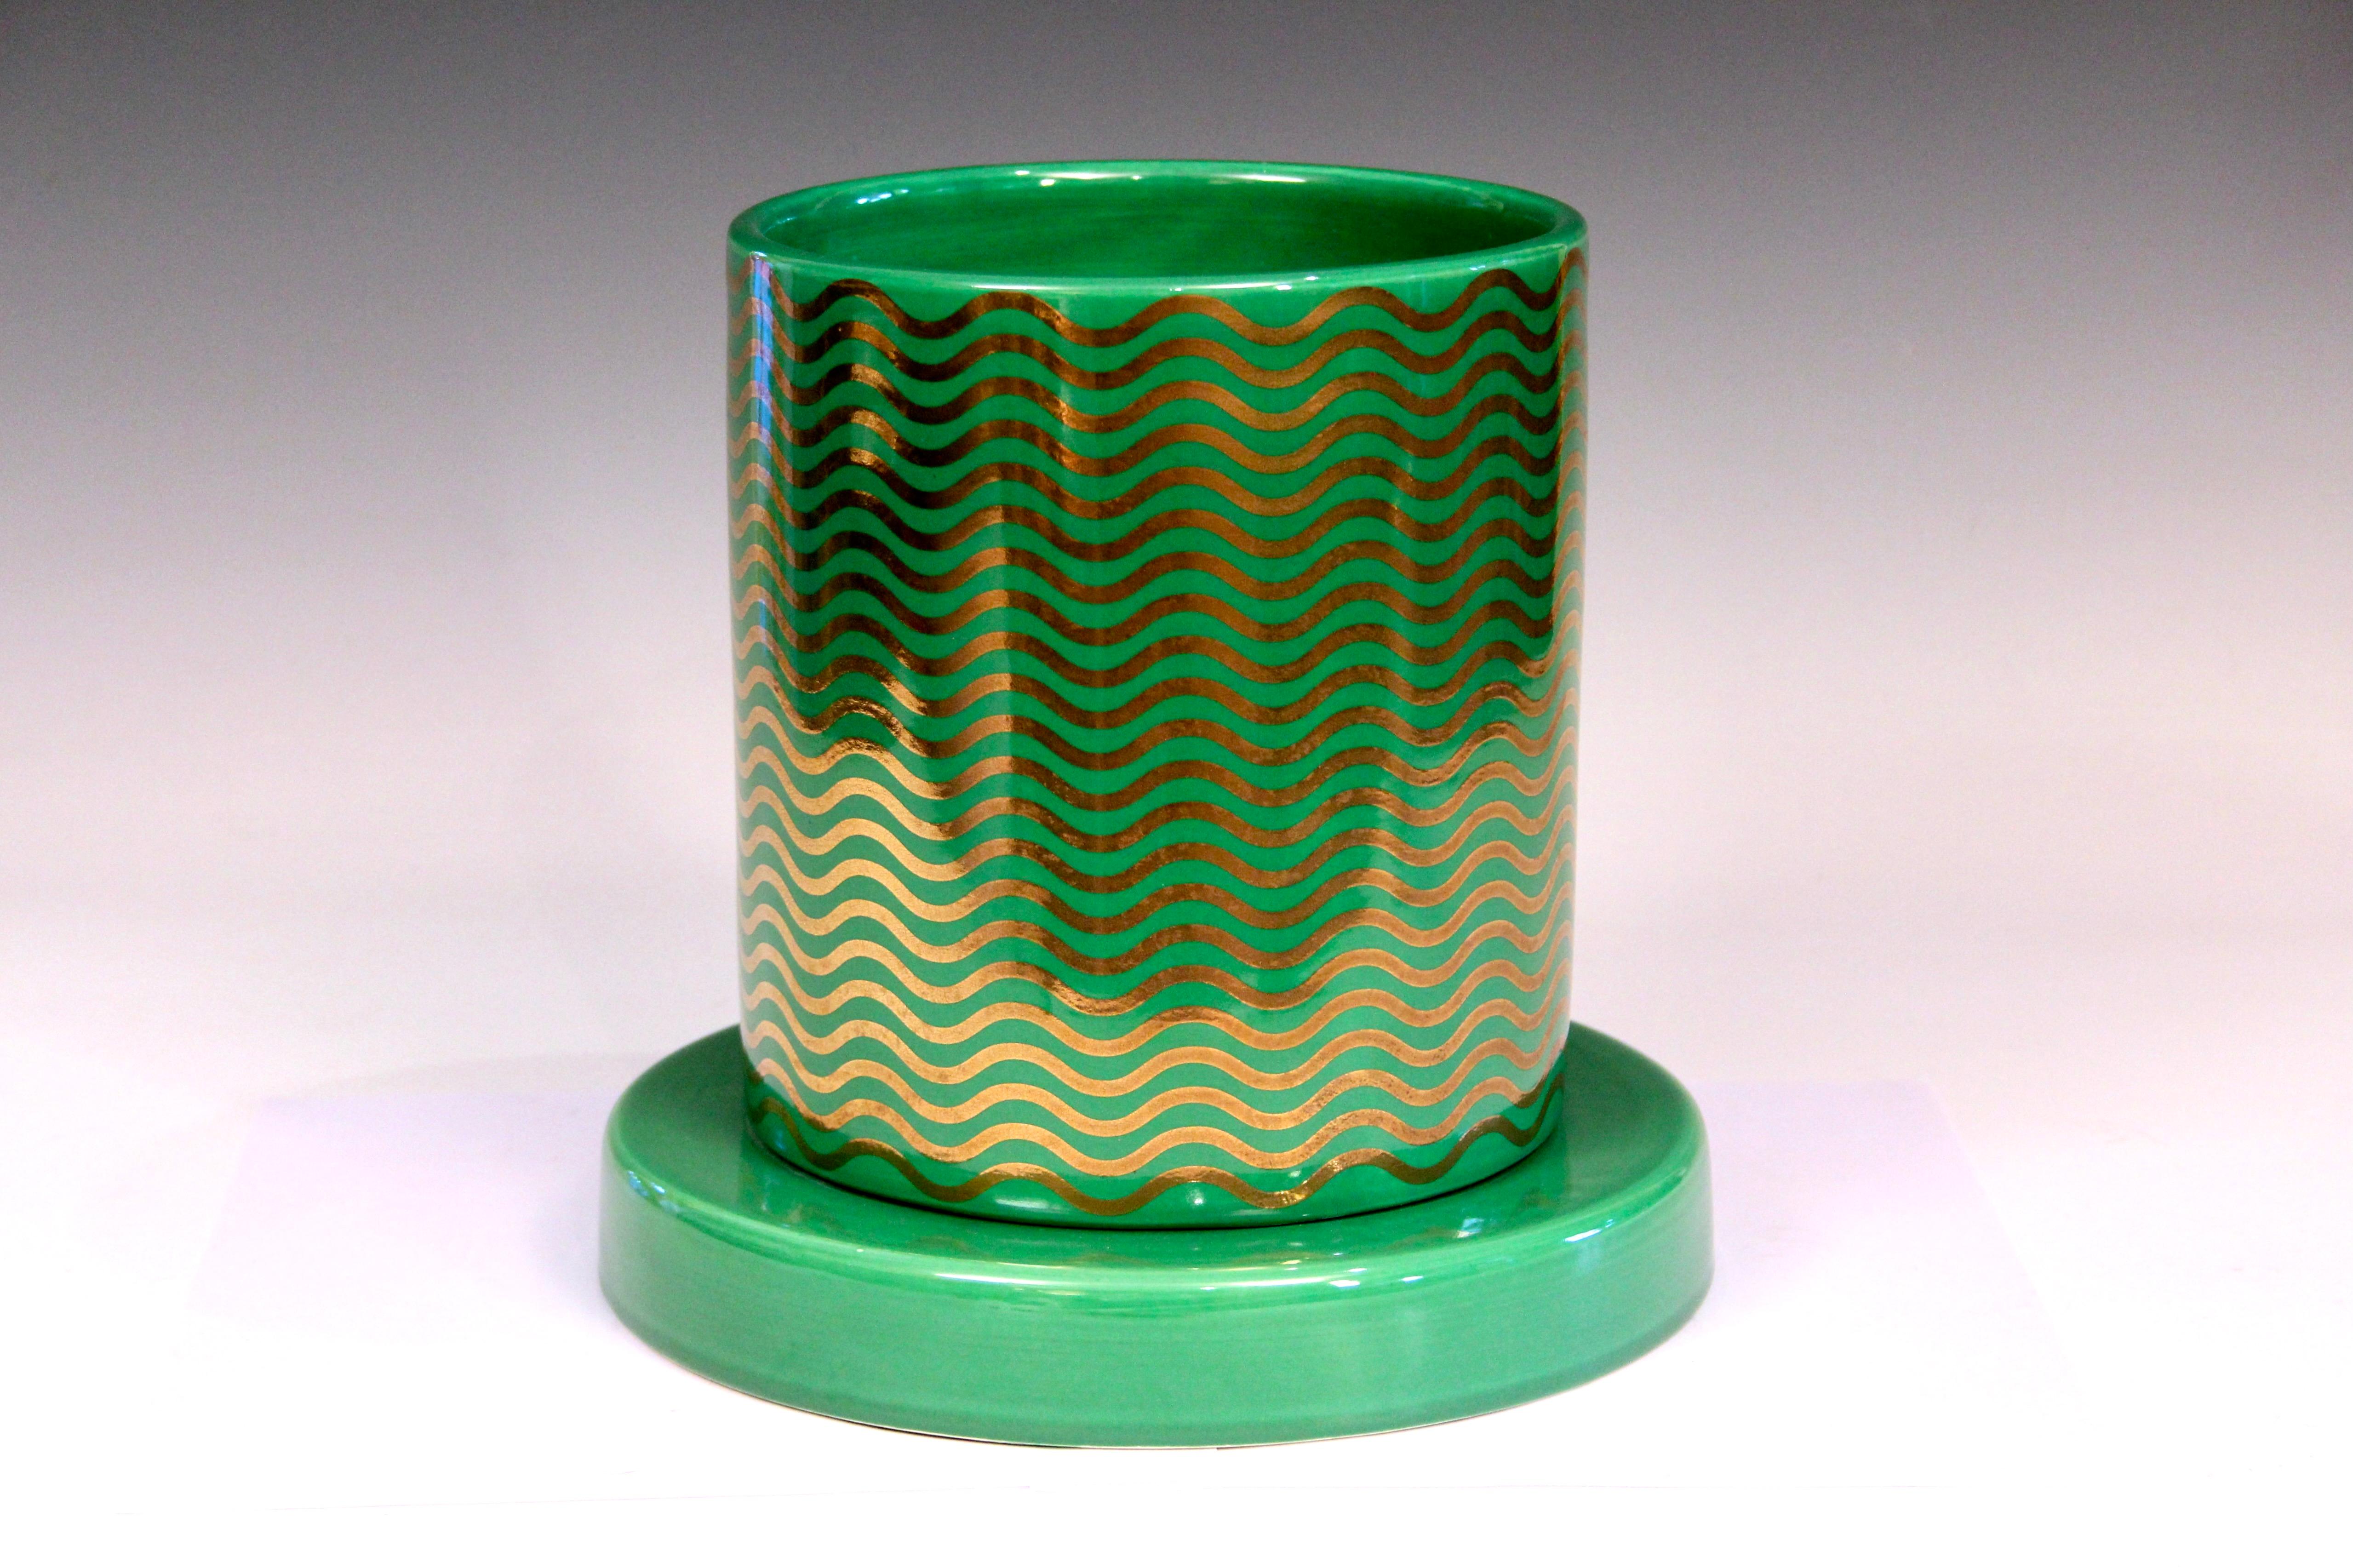 Ettore Sottsass Mediterreneo große Vase oder Urne mit vergoldeten Wellen auf grün glasiertem Grund. Aus einer Auflage von 15 Stück, datiert 2000. Original Lavori in Corso Label. Maße:  9